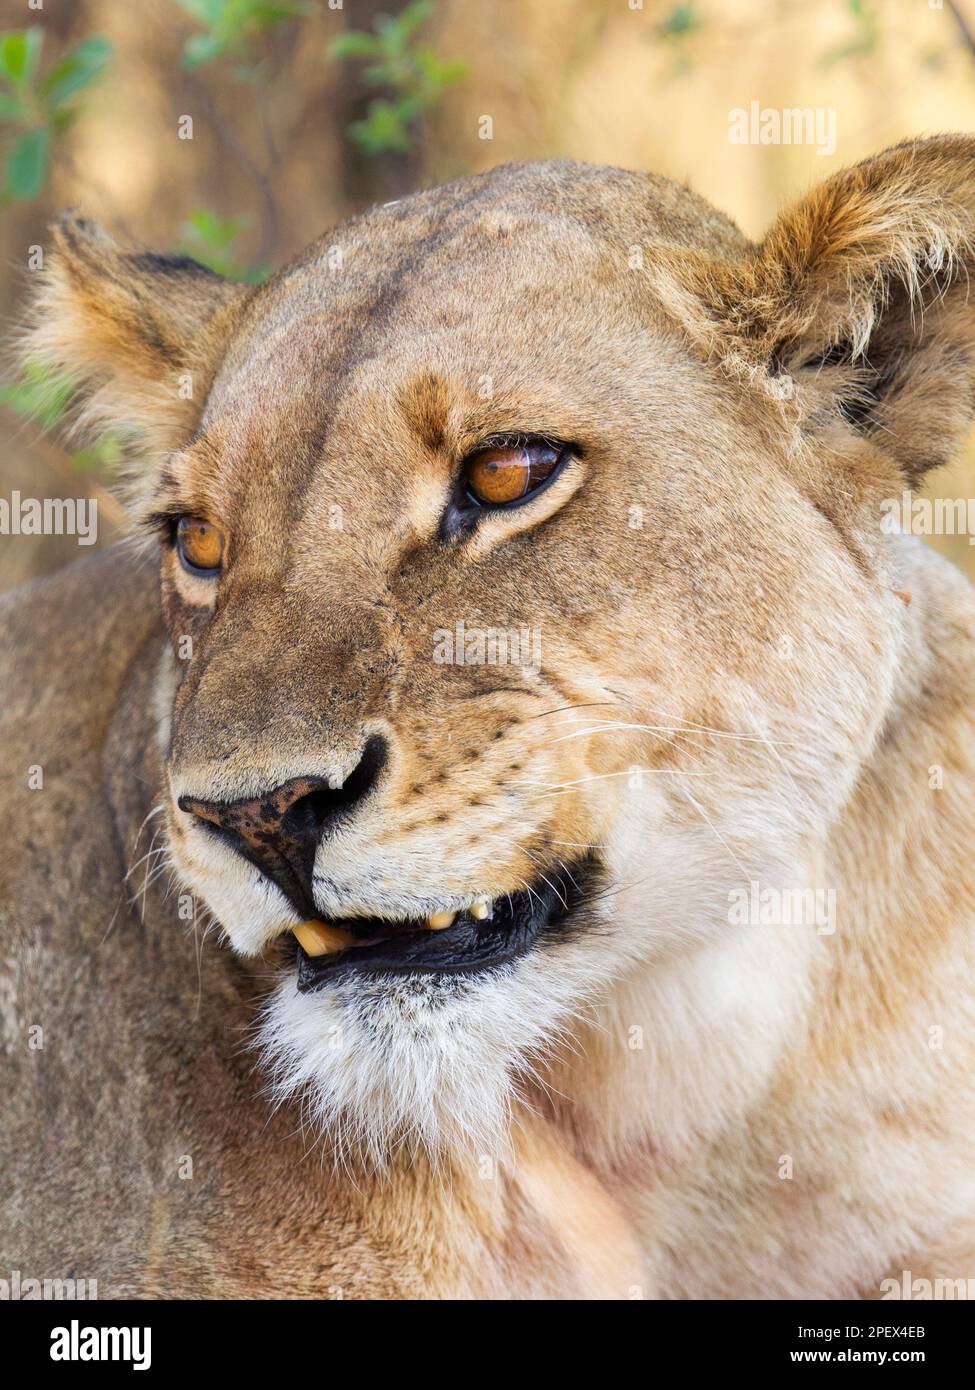 Löwin, Panthera leo, Porträt, Nahaufnahme von Gesicht und Kopf. Unscharfer Hintergrund. Okavango Delta, Botsuana, Afrika Stockfoto